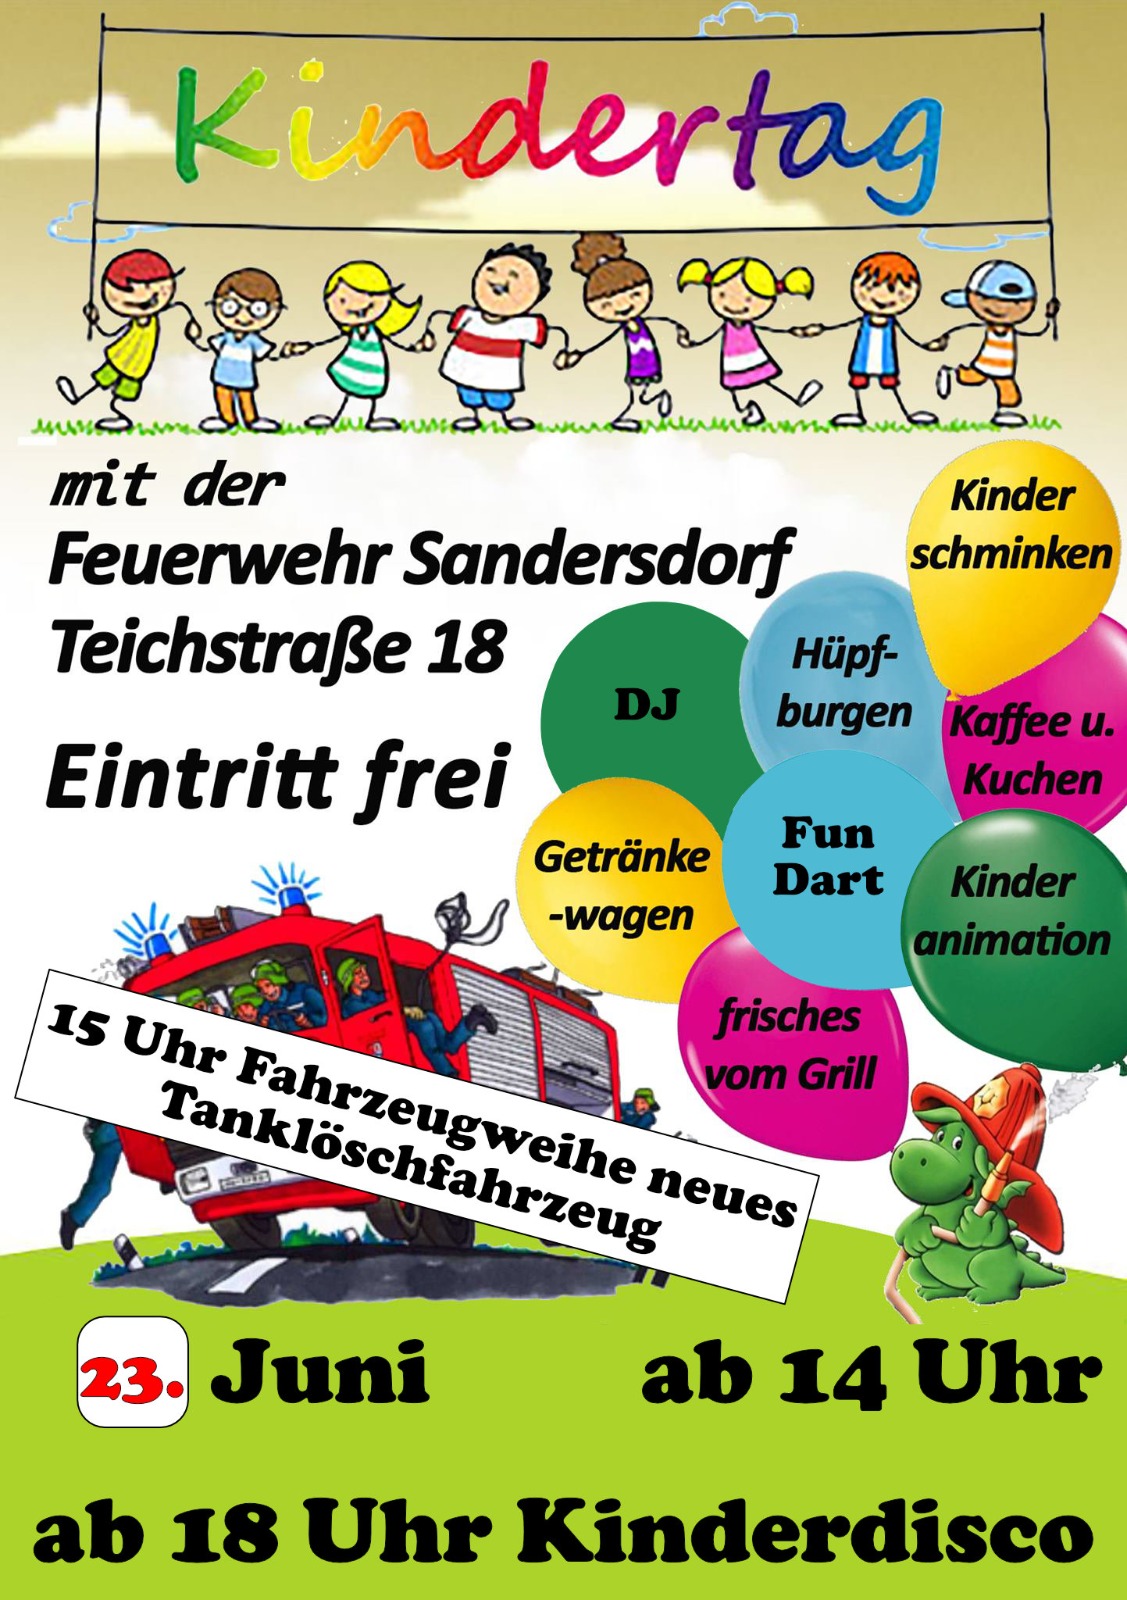 Bild vergrößern: Kinderfest bei der Feuerwehr Sandersdorf